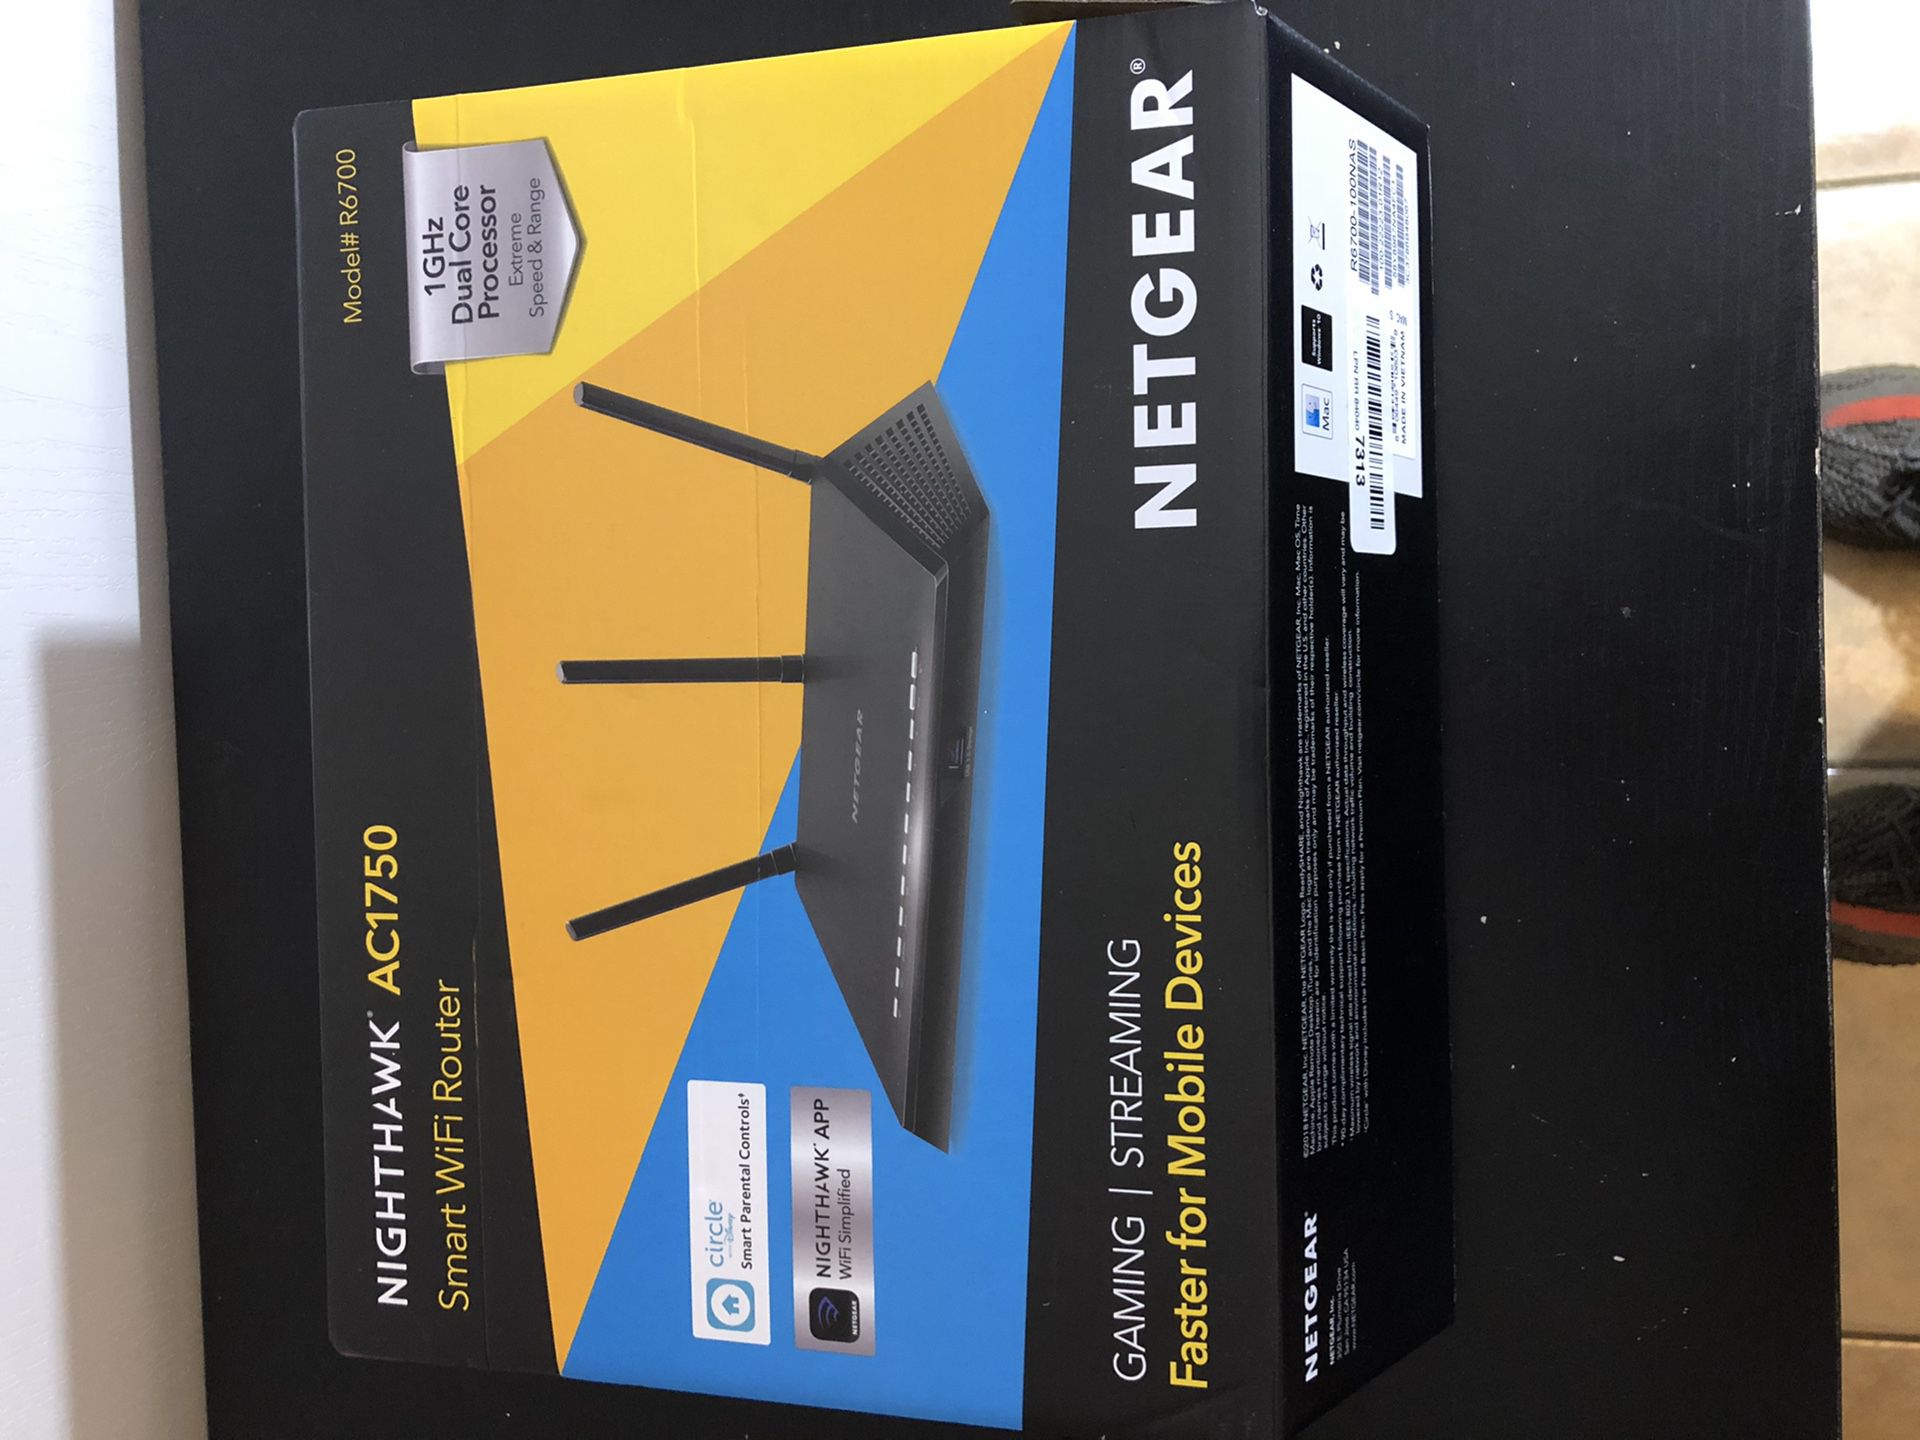 NETGEAR Nighthawk Smart WiFi Router (R6700) - AC1750